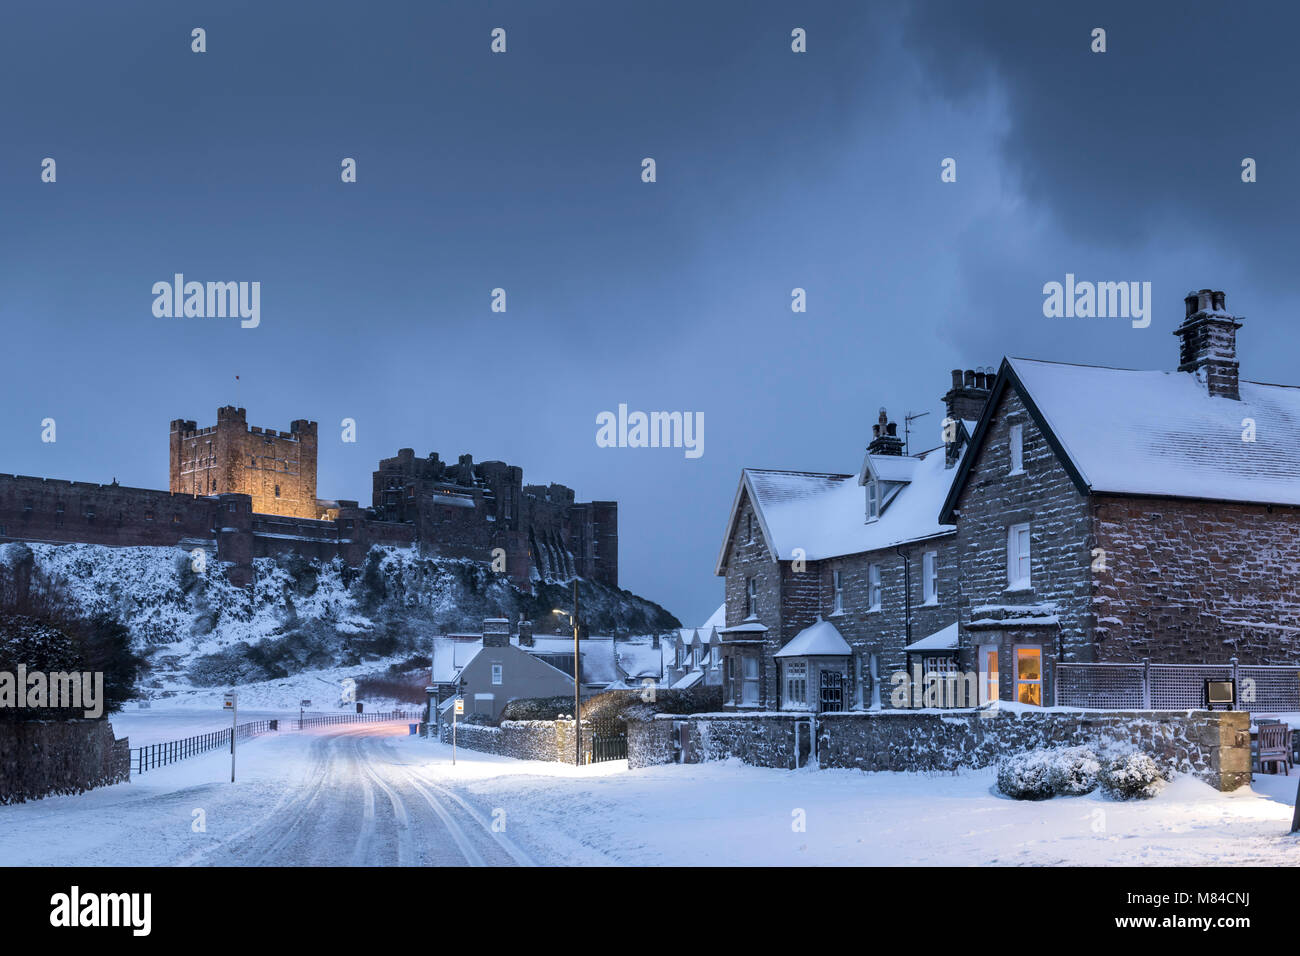 Château de Bamburgh et village de neige de l'hiver, Northumberland, Angleterre. L'hiver (février) 2018. Banque D'Images